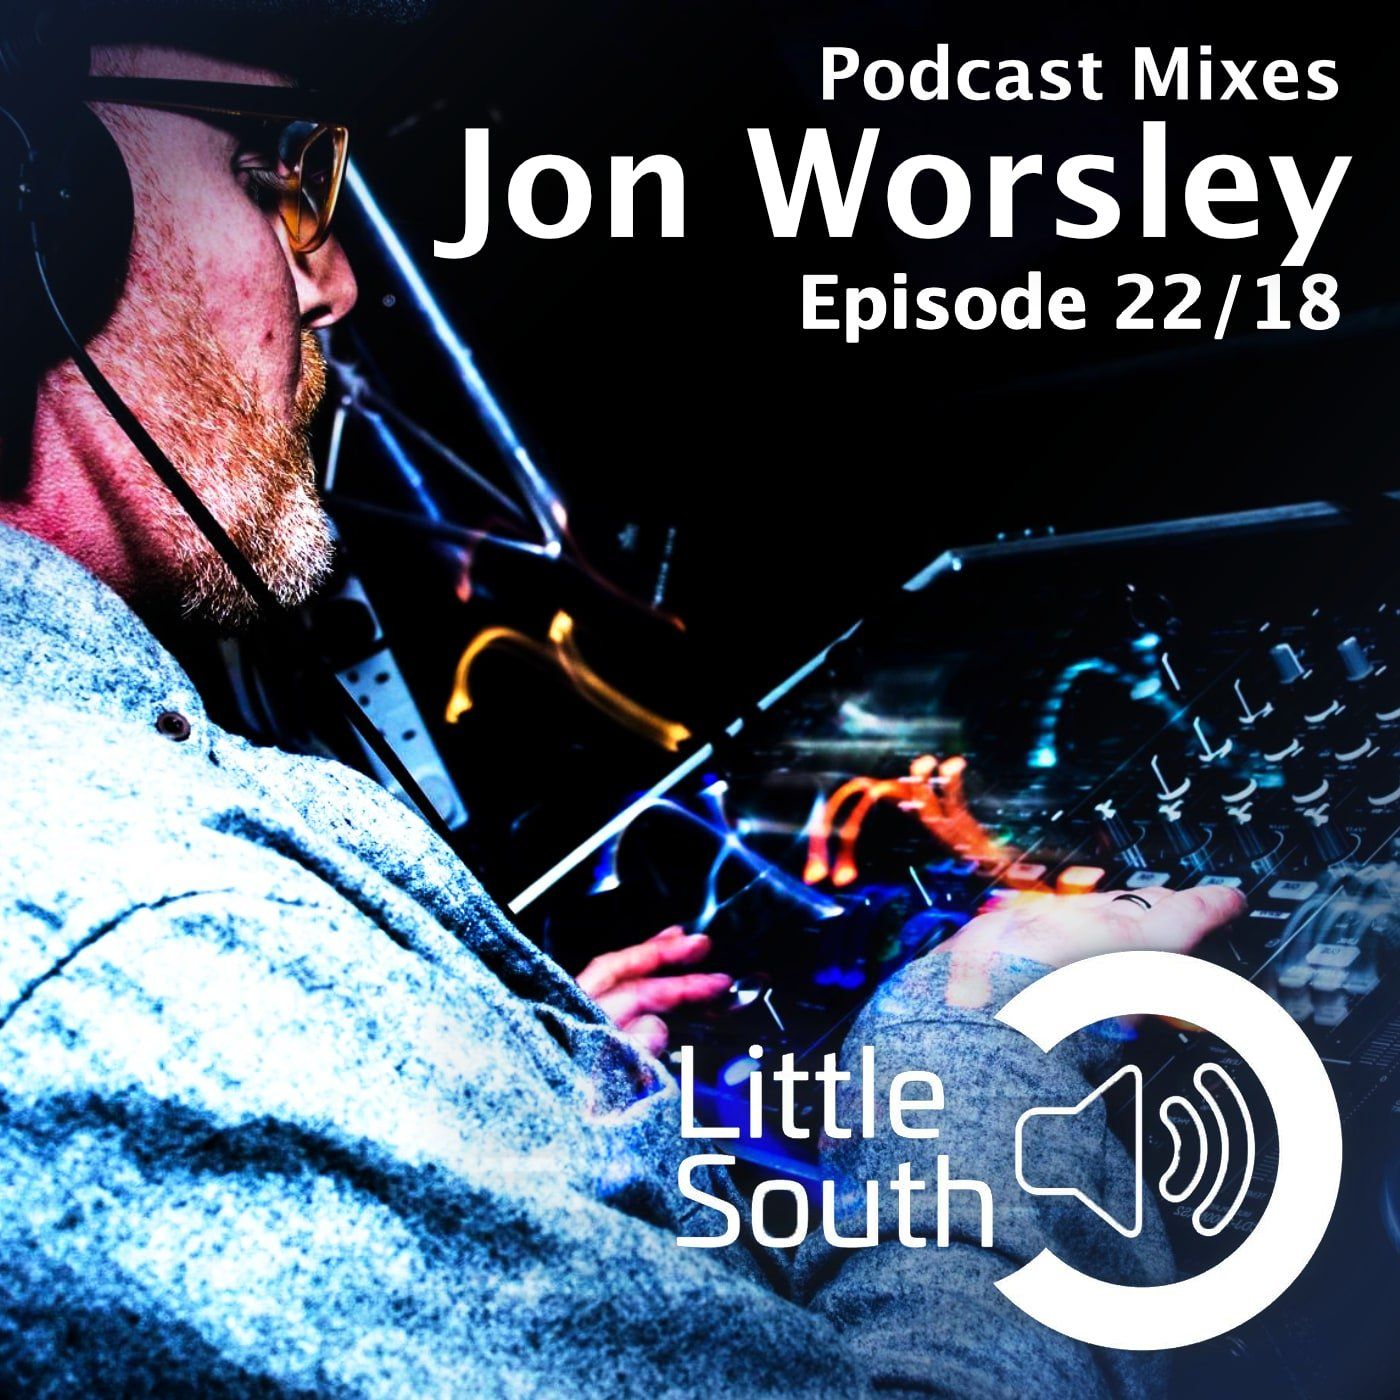 Episode 22/18 | Jon Worsley | Podcast Mixes